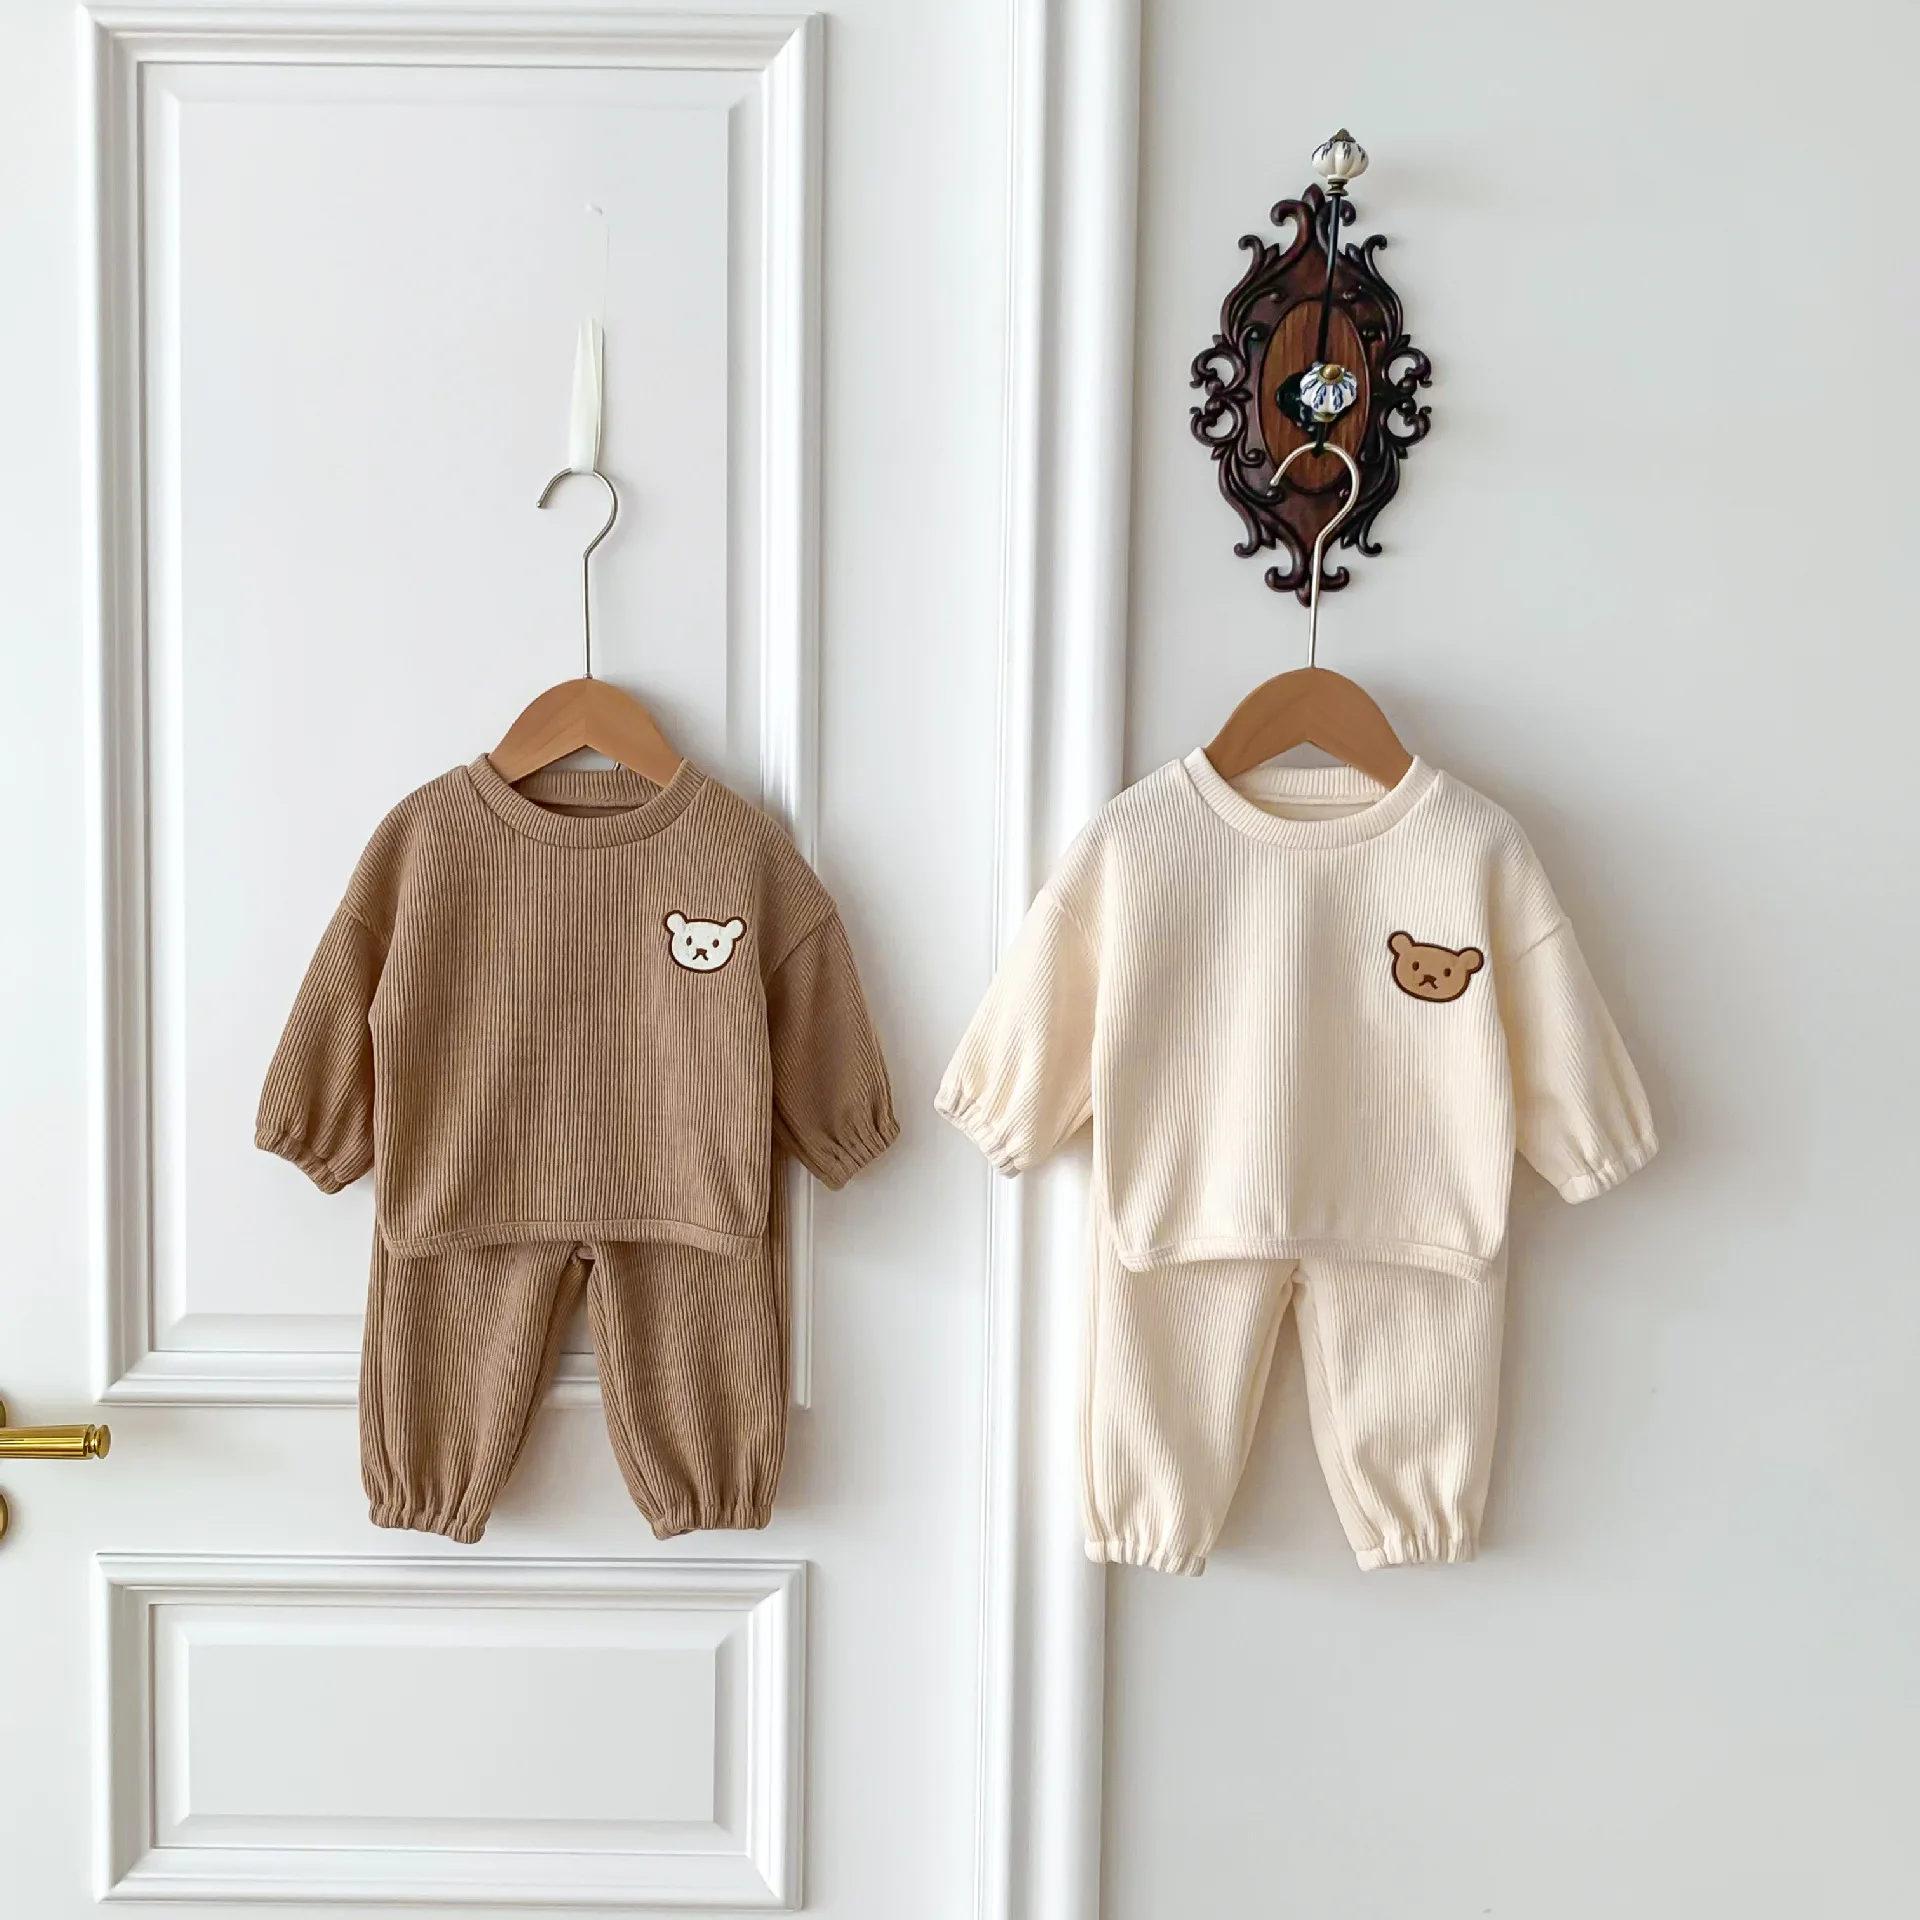 New Autumn Baby Clothes Set Infant Cartoon Bear Hoodie+Pants Boys Outwear 2PCS